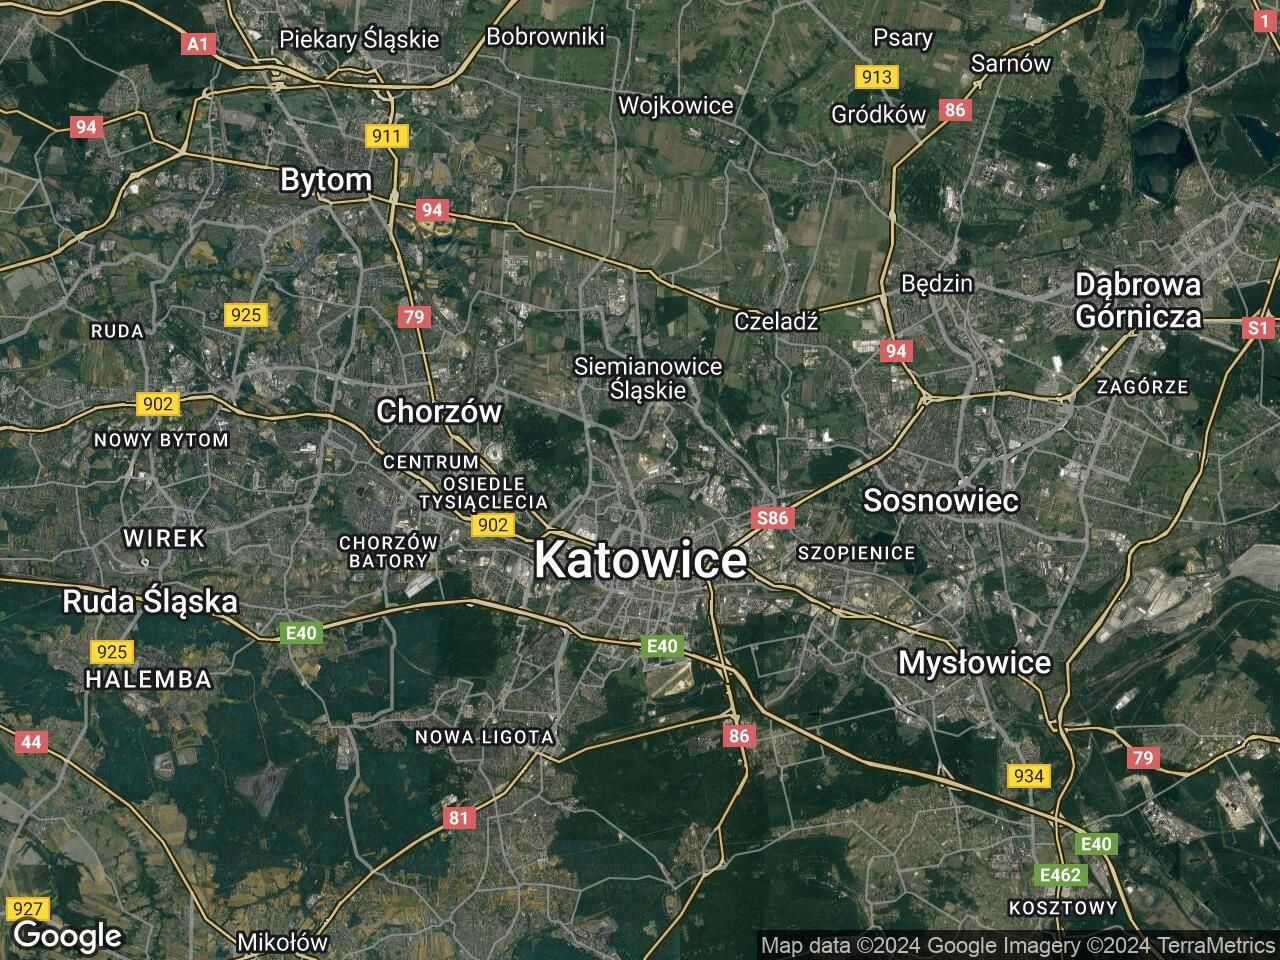 Lokal Katowice Wełnowiec